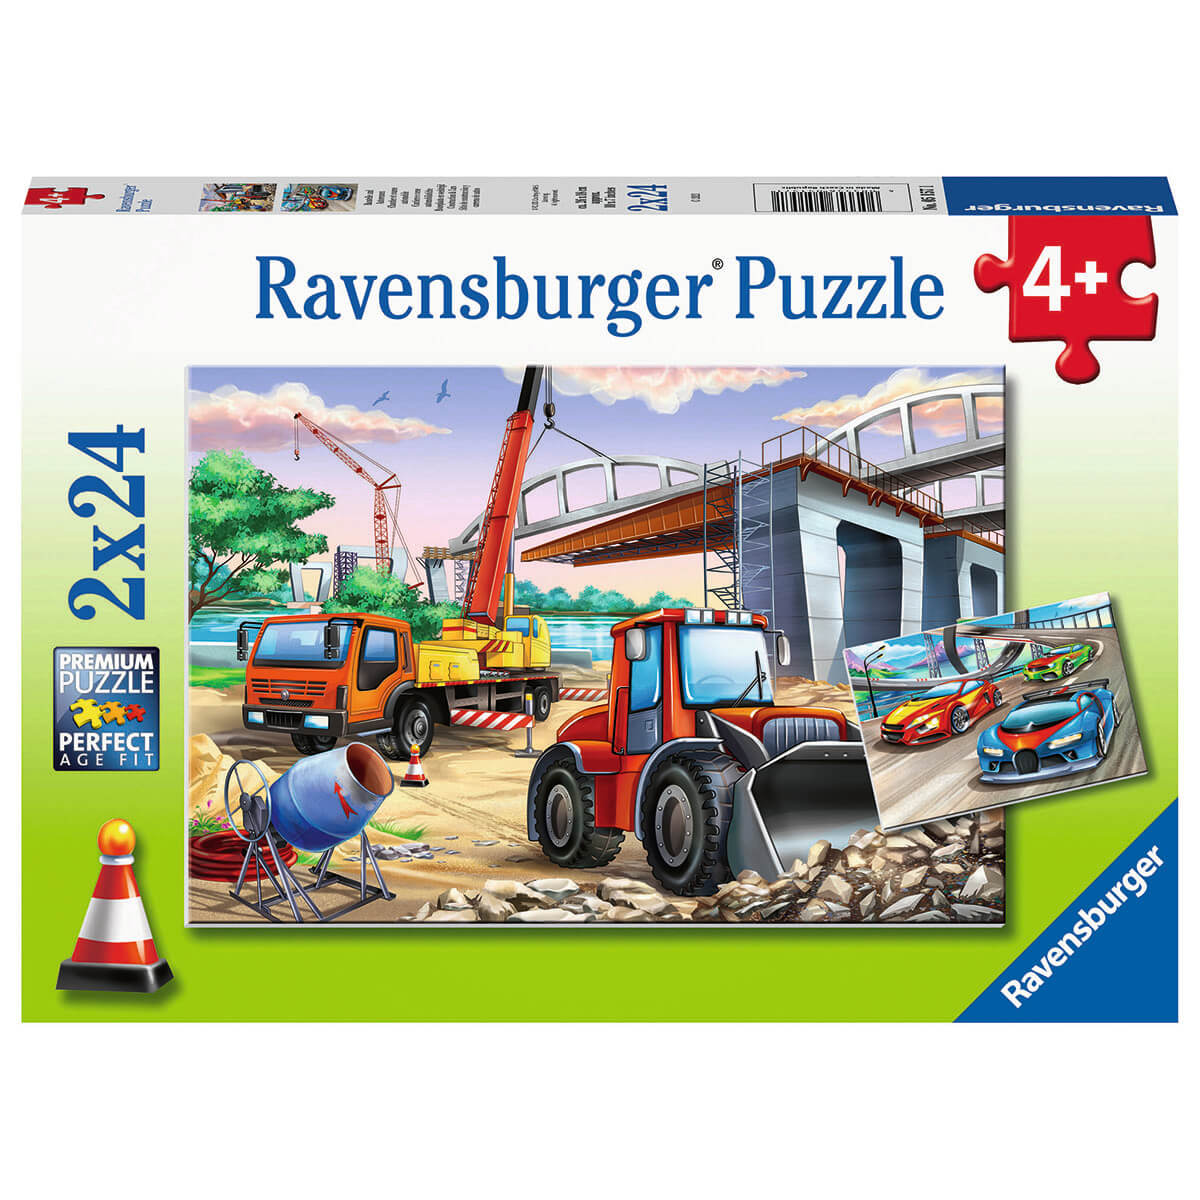 Ravensburger Construction & Cars 2 x 24 Piece Puzzle